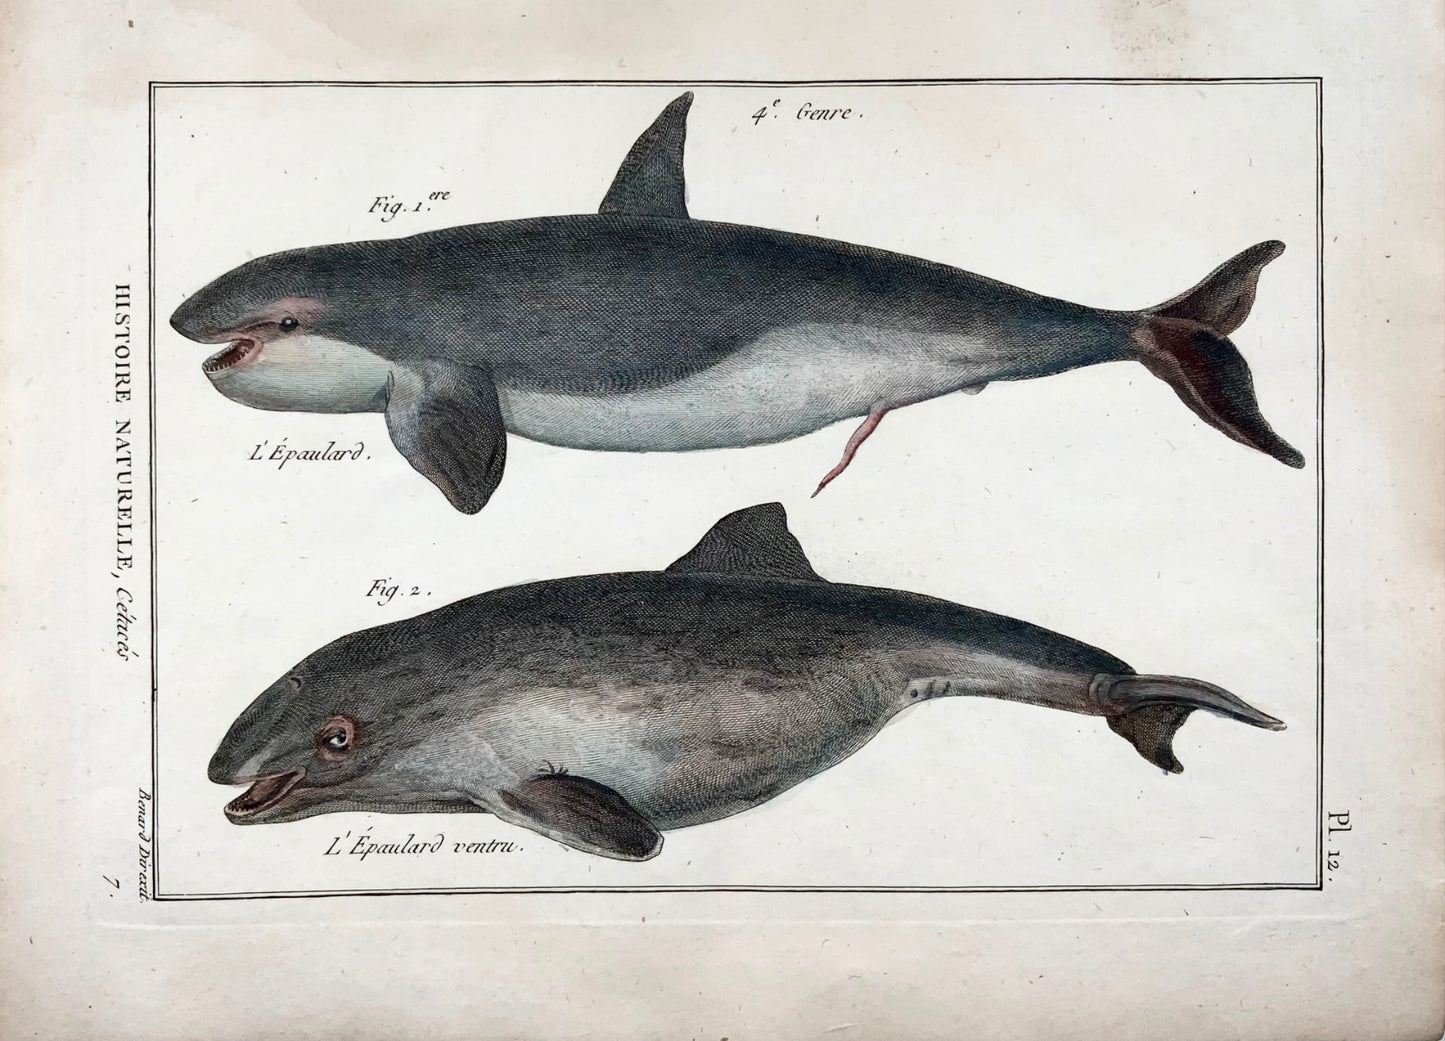 1789 Orca, whales, mammals, Benard sc. quarto, hand colour, engraving, marine life